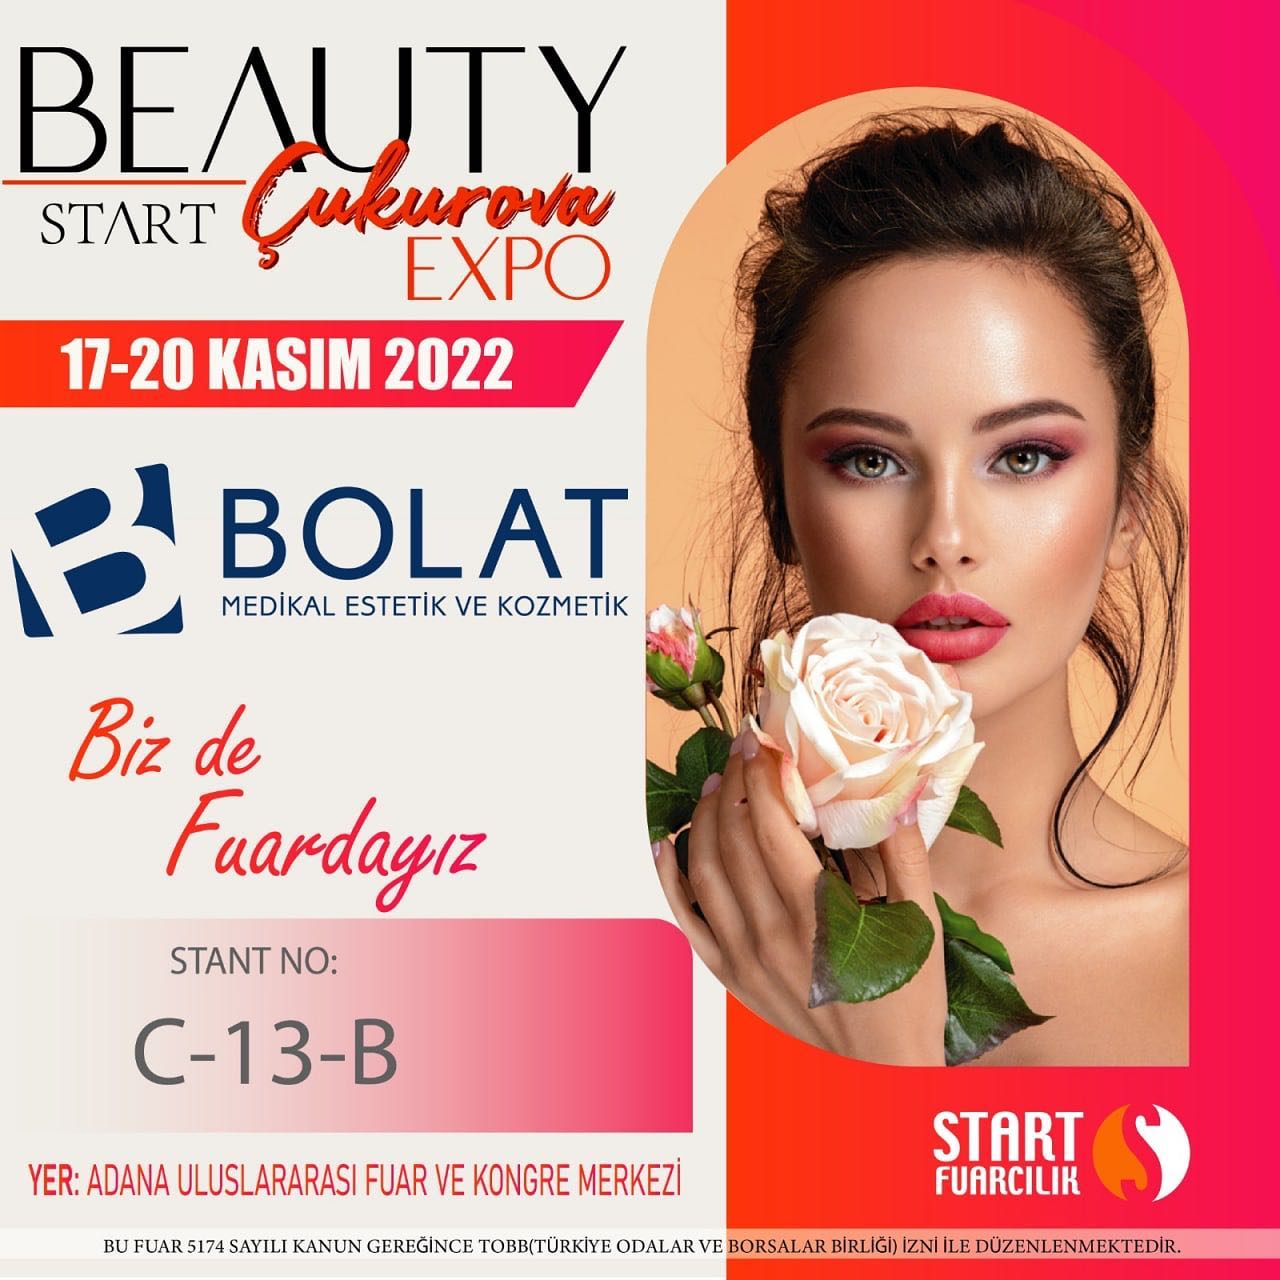 17-20 Kasım tarihleri arasında düzenlenen, Start Beauty Çukurova Expo Fuarında yerimizi aldık. C-13 B nolu standımıza bekliyoruz.